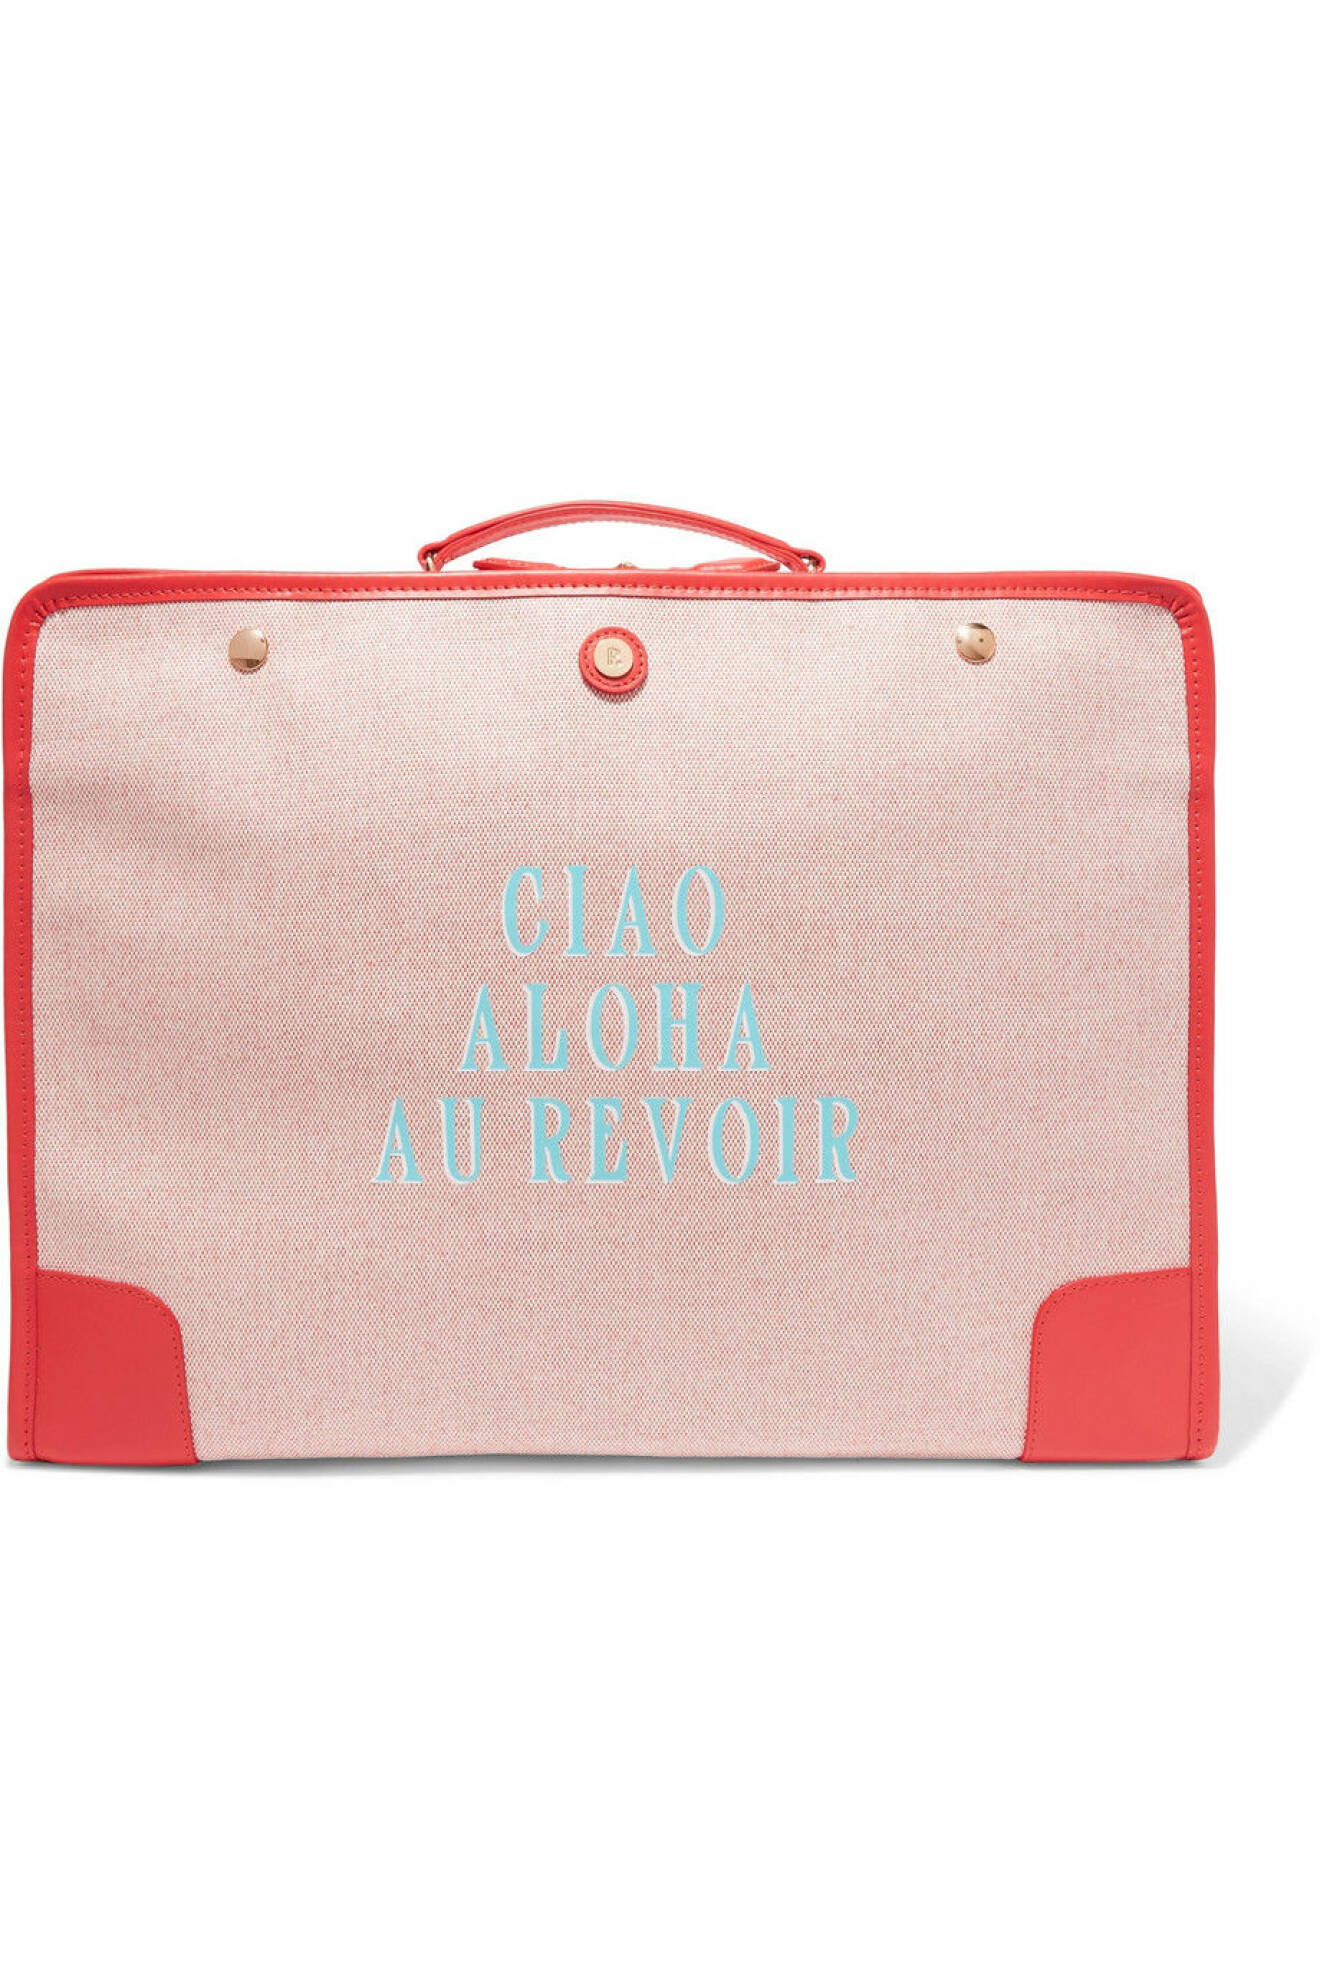 Tjusig resväska i rosa med blått tryck från Paravel.